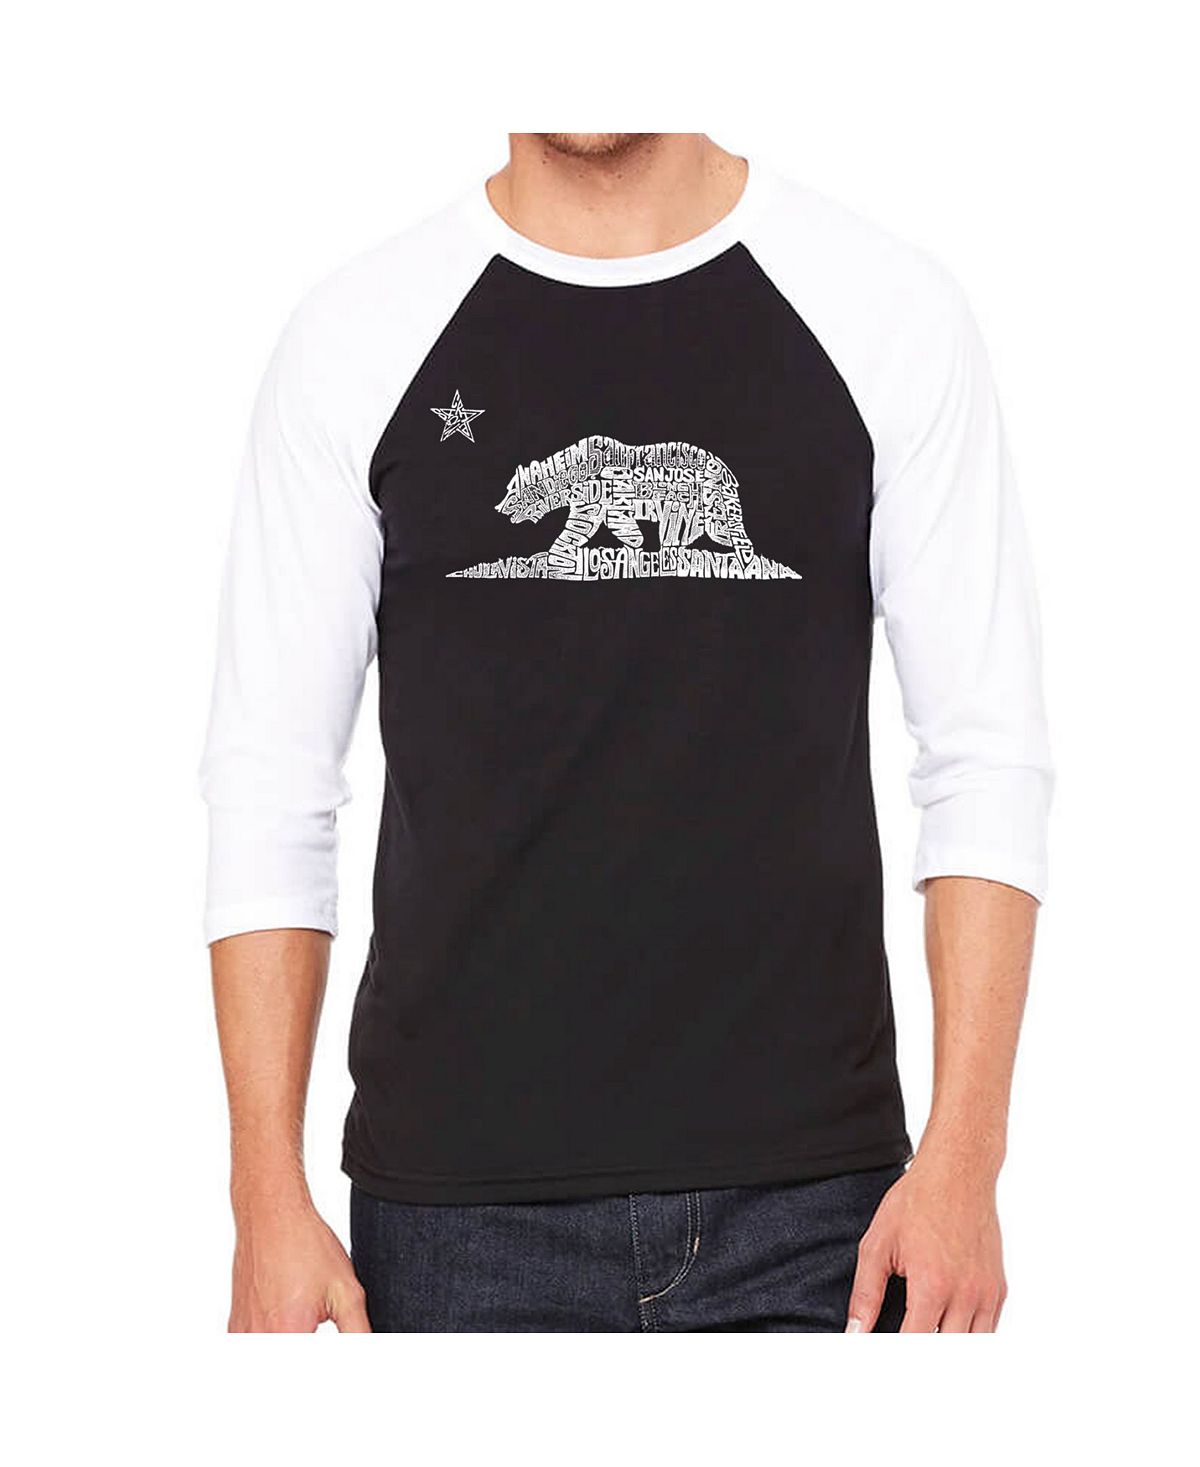 Мужская футболка реглан Word Art California Bear LA Pop Art мужская футболка word art california dreamin la pop art черный